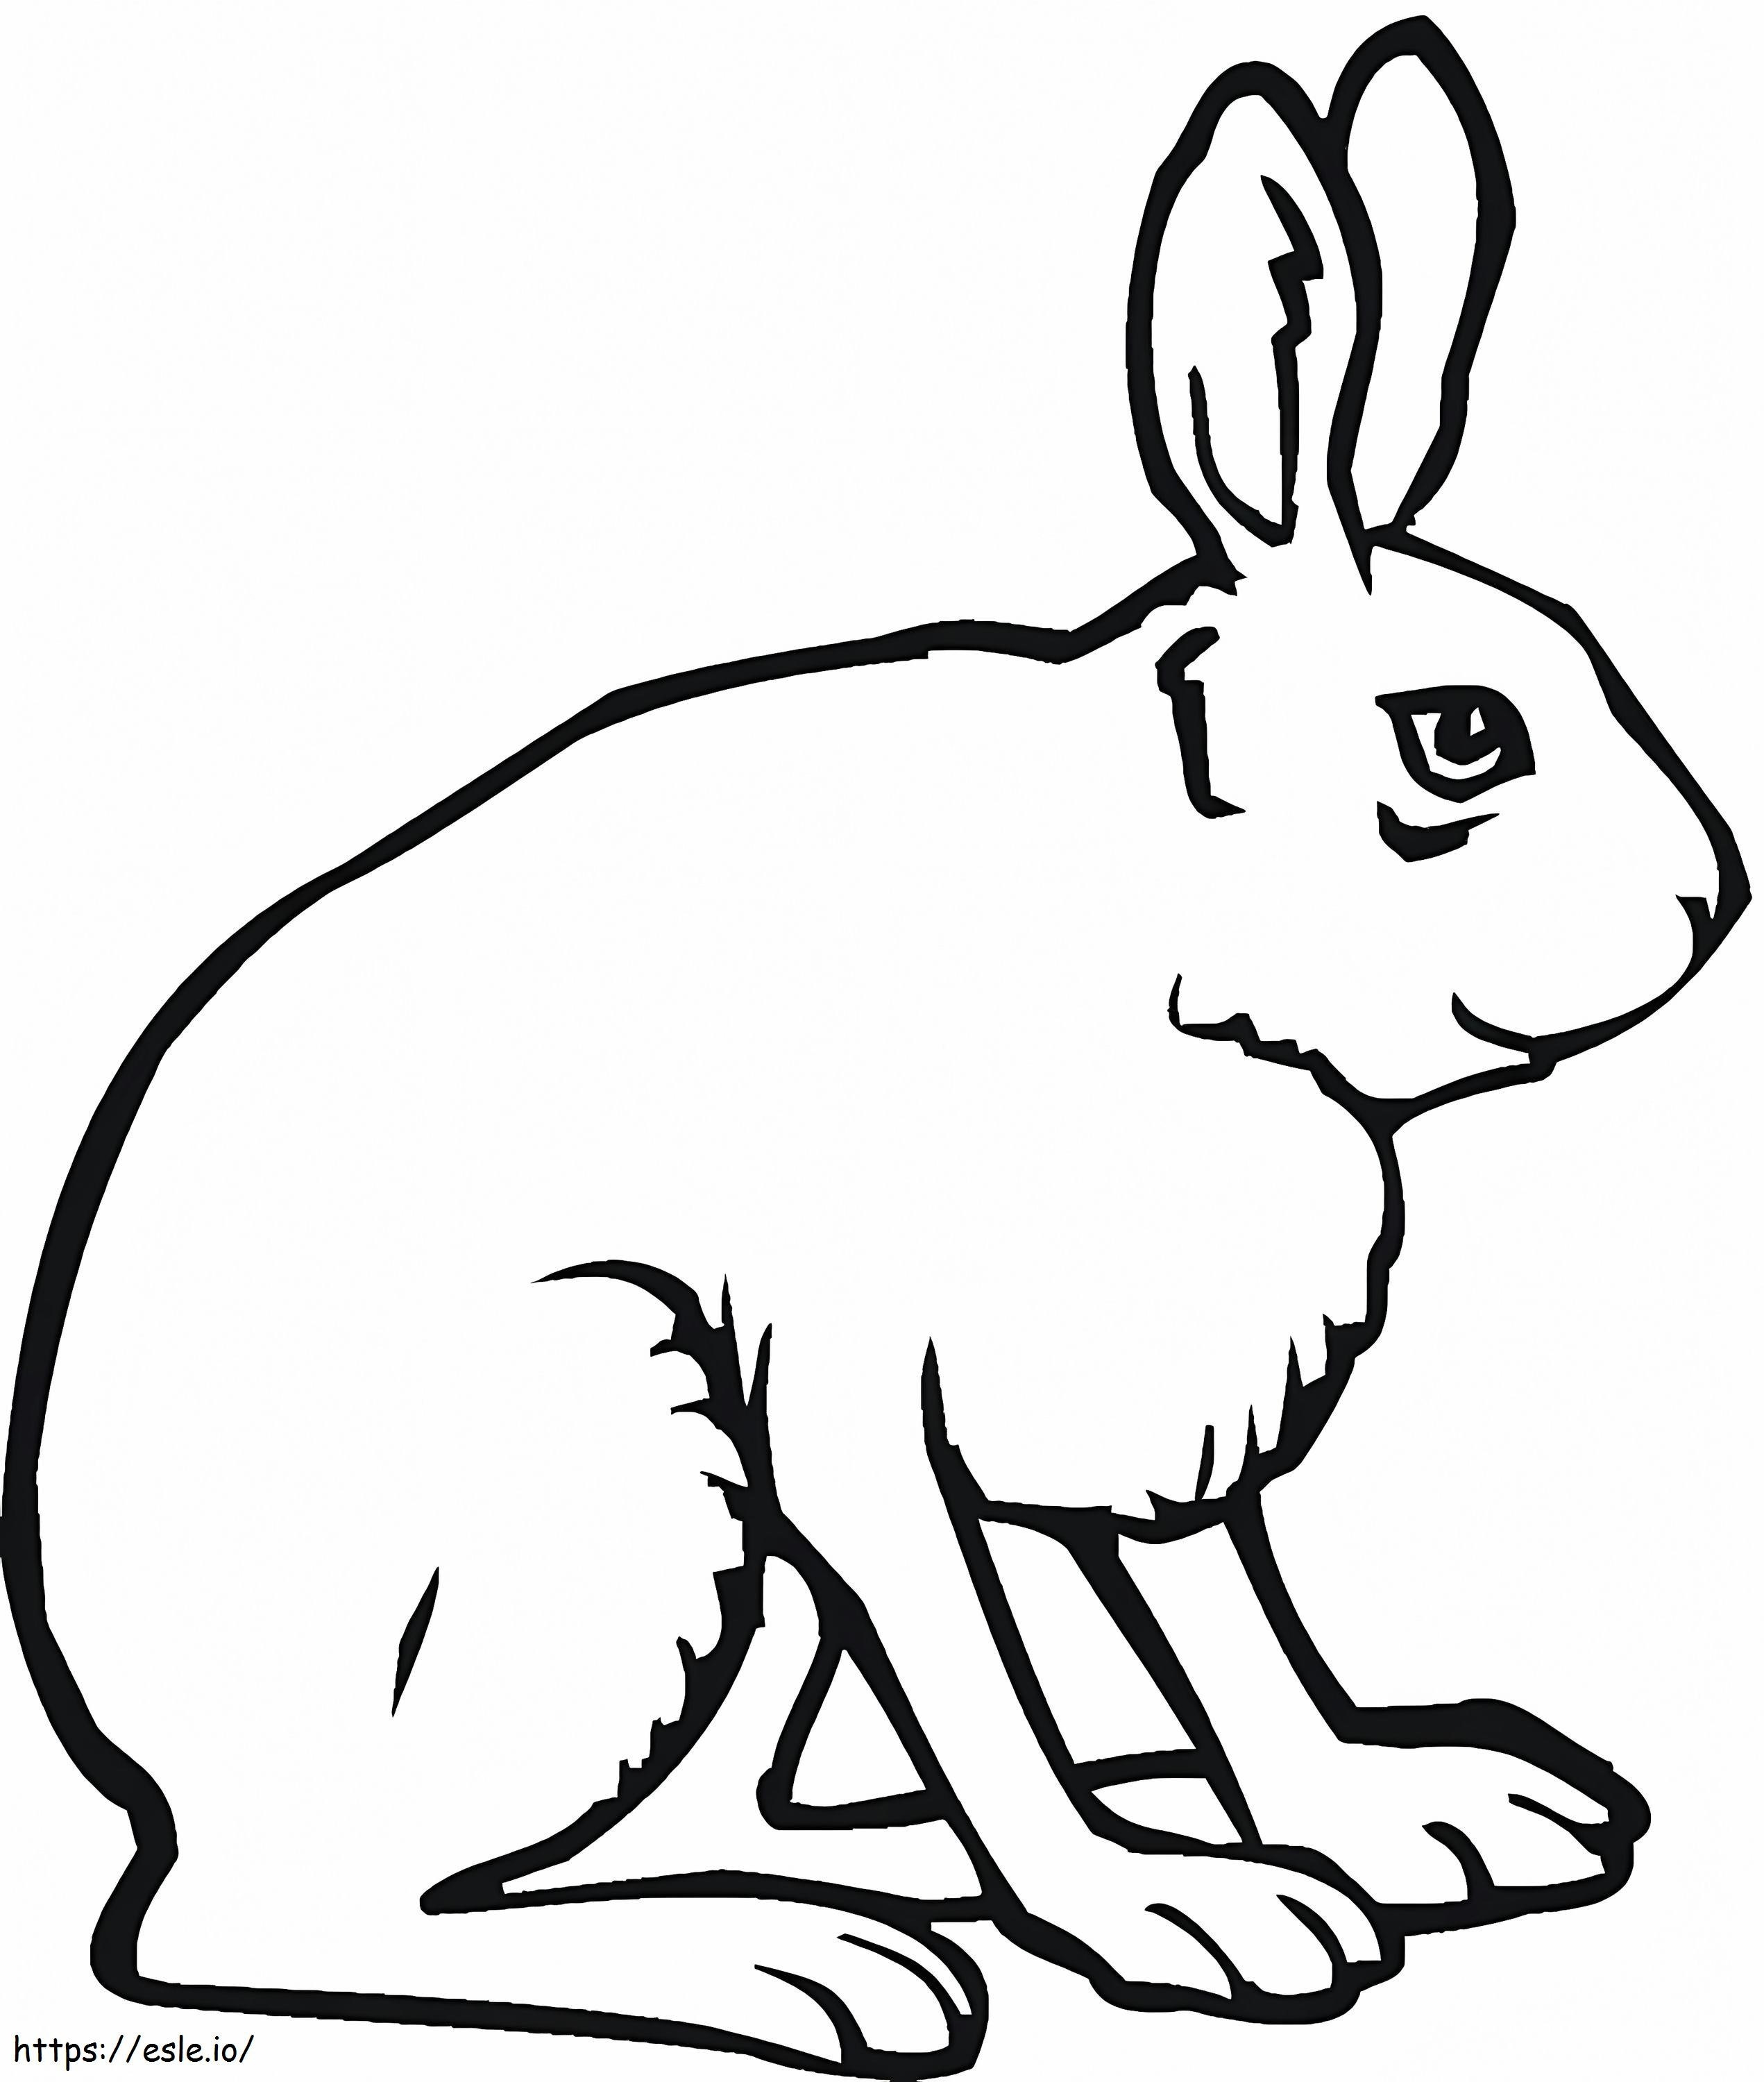 Jack Tavşan boyama